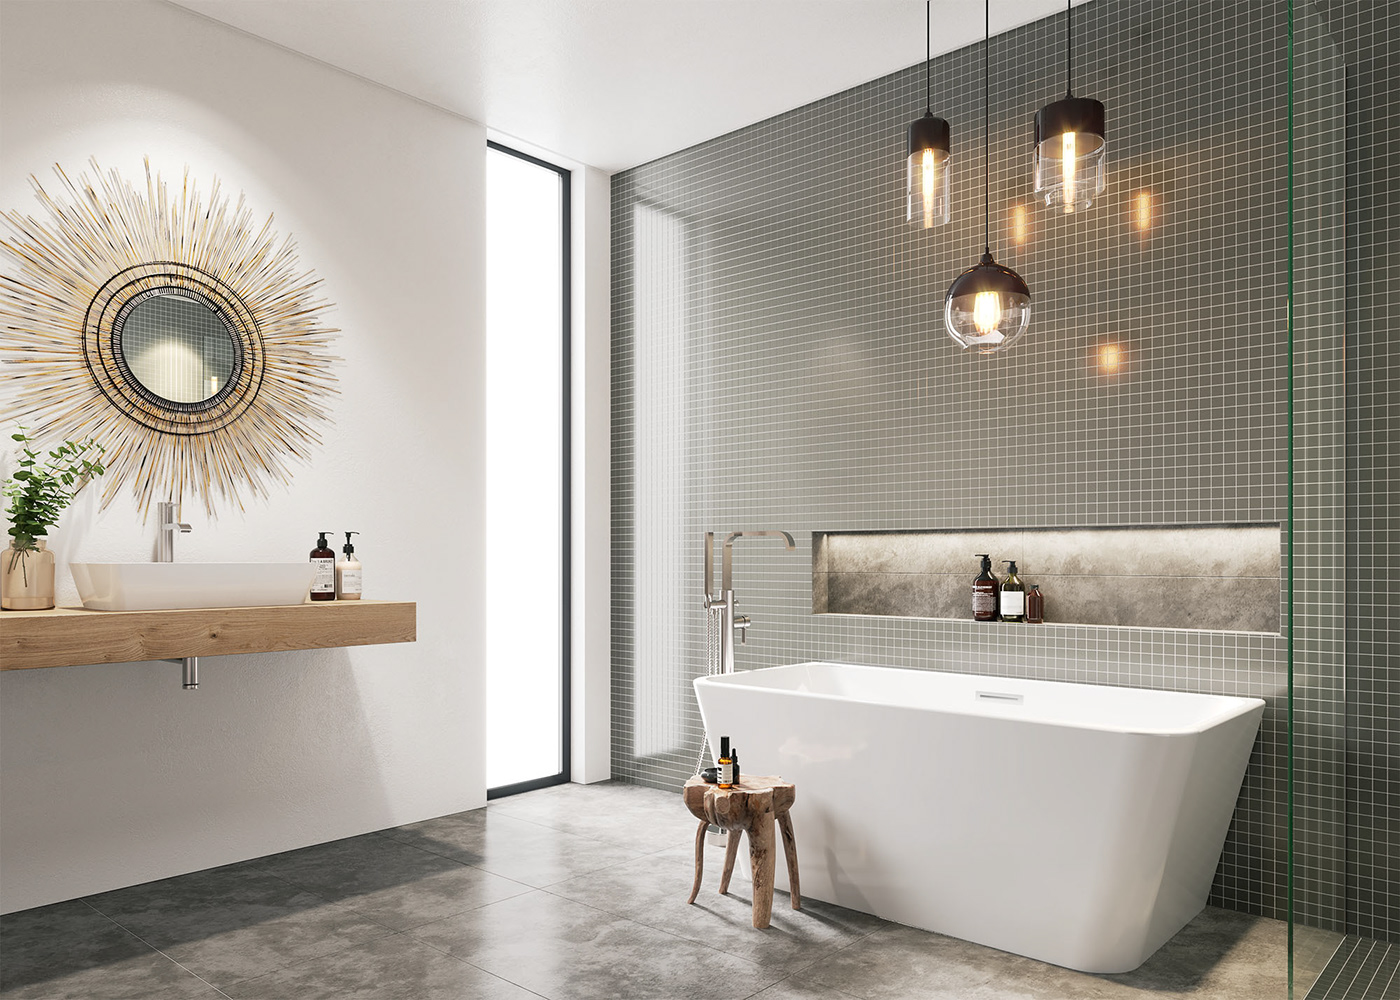 bathroom corona renderer Render Worx 3ds max bathroom design